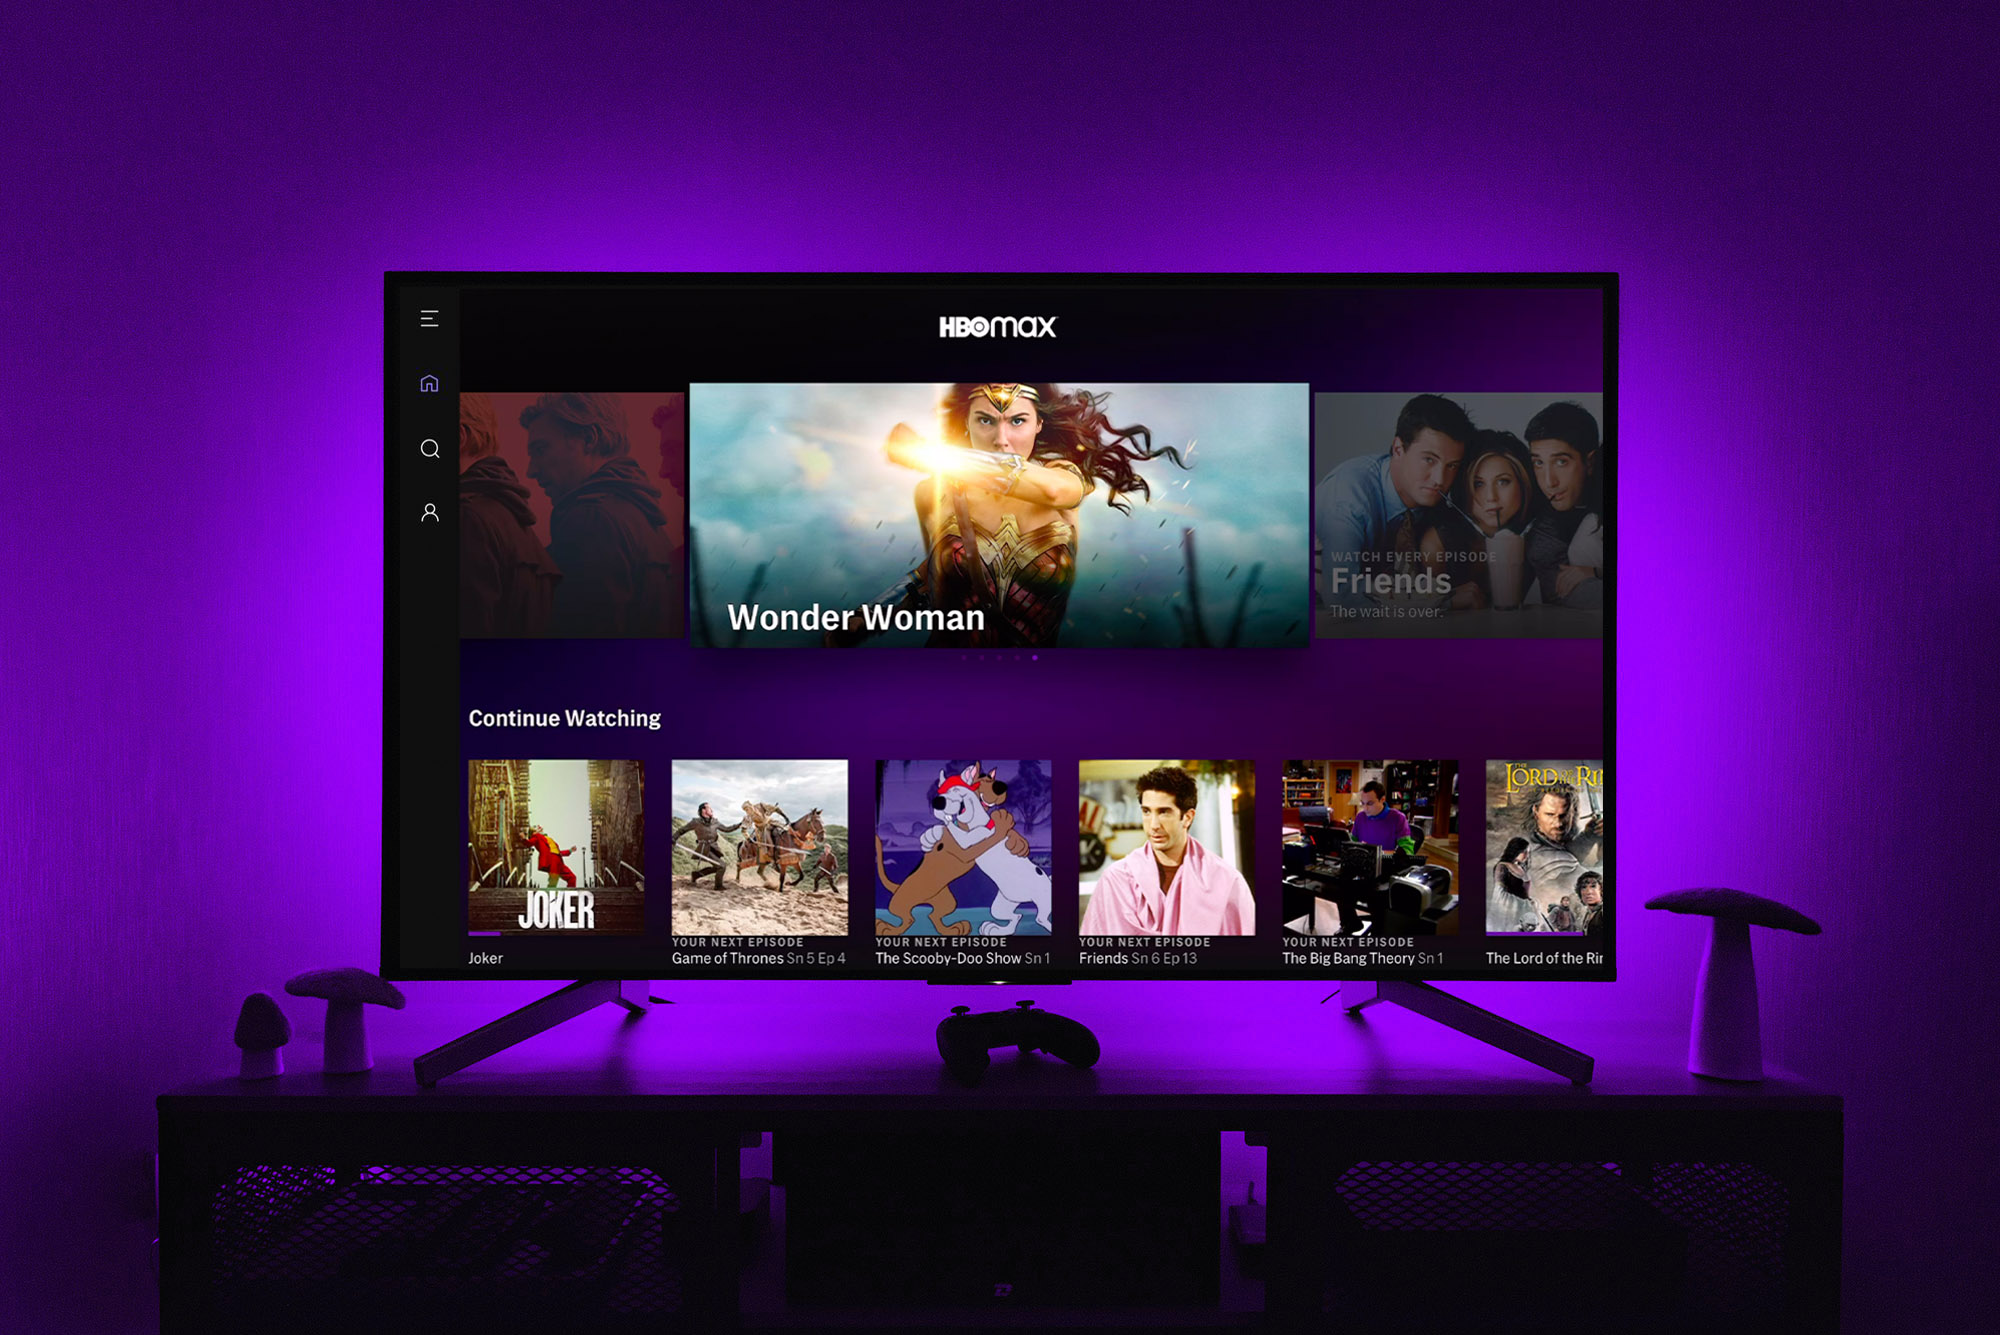 La aplicación HBO Max en la pantalla de un televisor mientras luces violetas iluminan la pared de atrás.